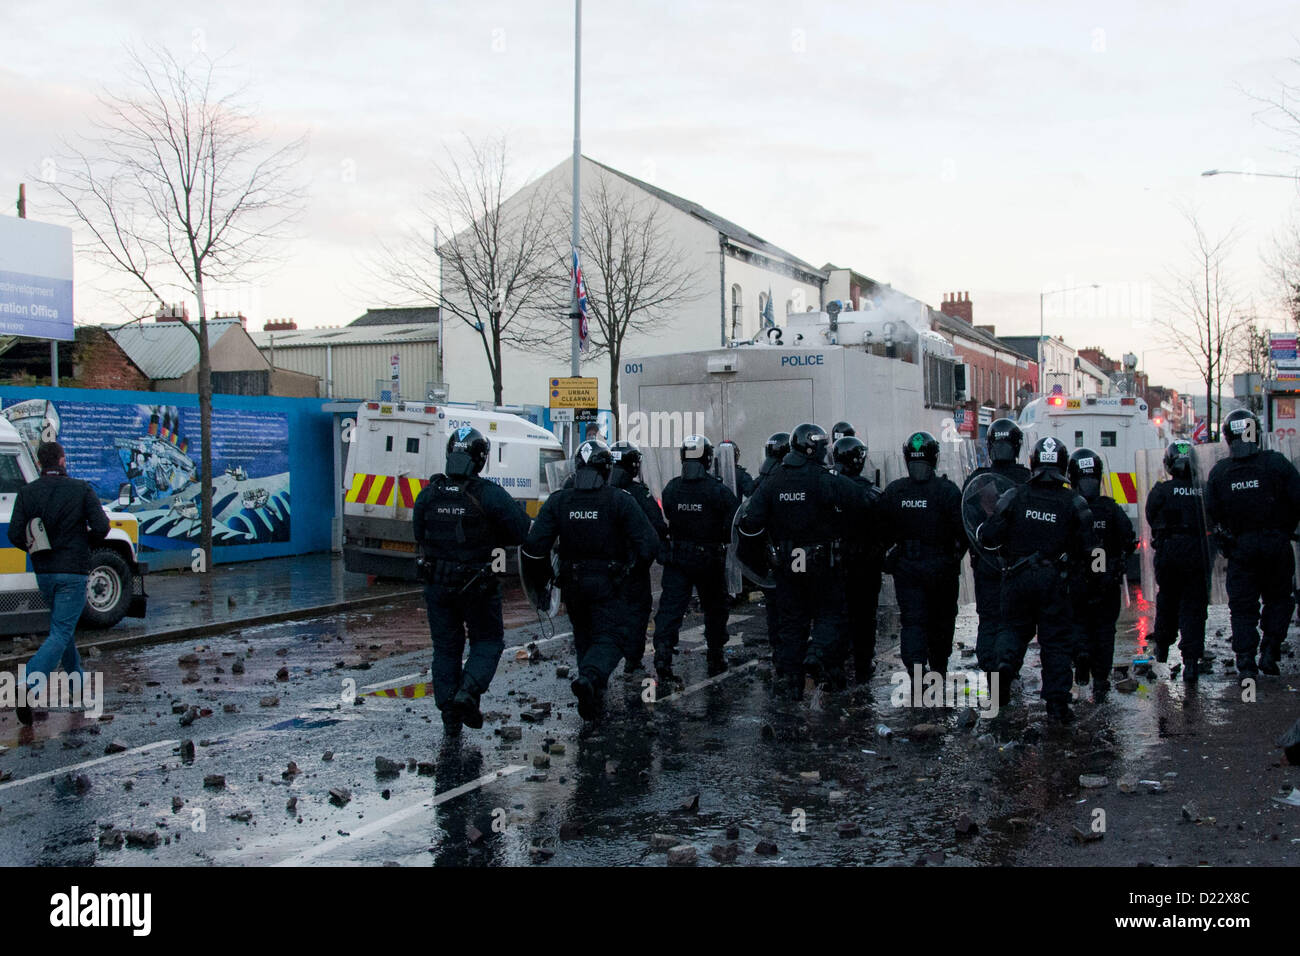 Belfast, UK. 01.12.13. Bereitschaftspolizei aufladen Loyalist Jugendliche als Ausschreitungen bricht in Belfast Borough von Castlereagh...  © Pete Maclaine / Alamy Live News Stockfoto